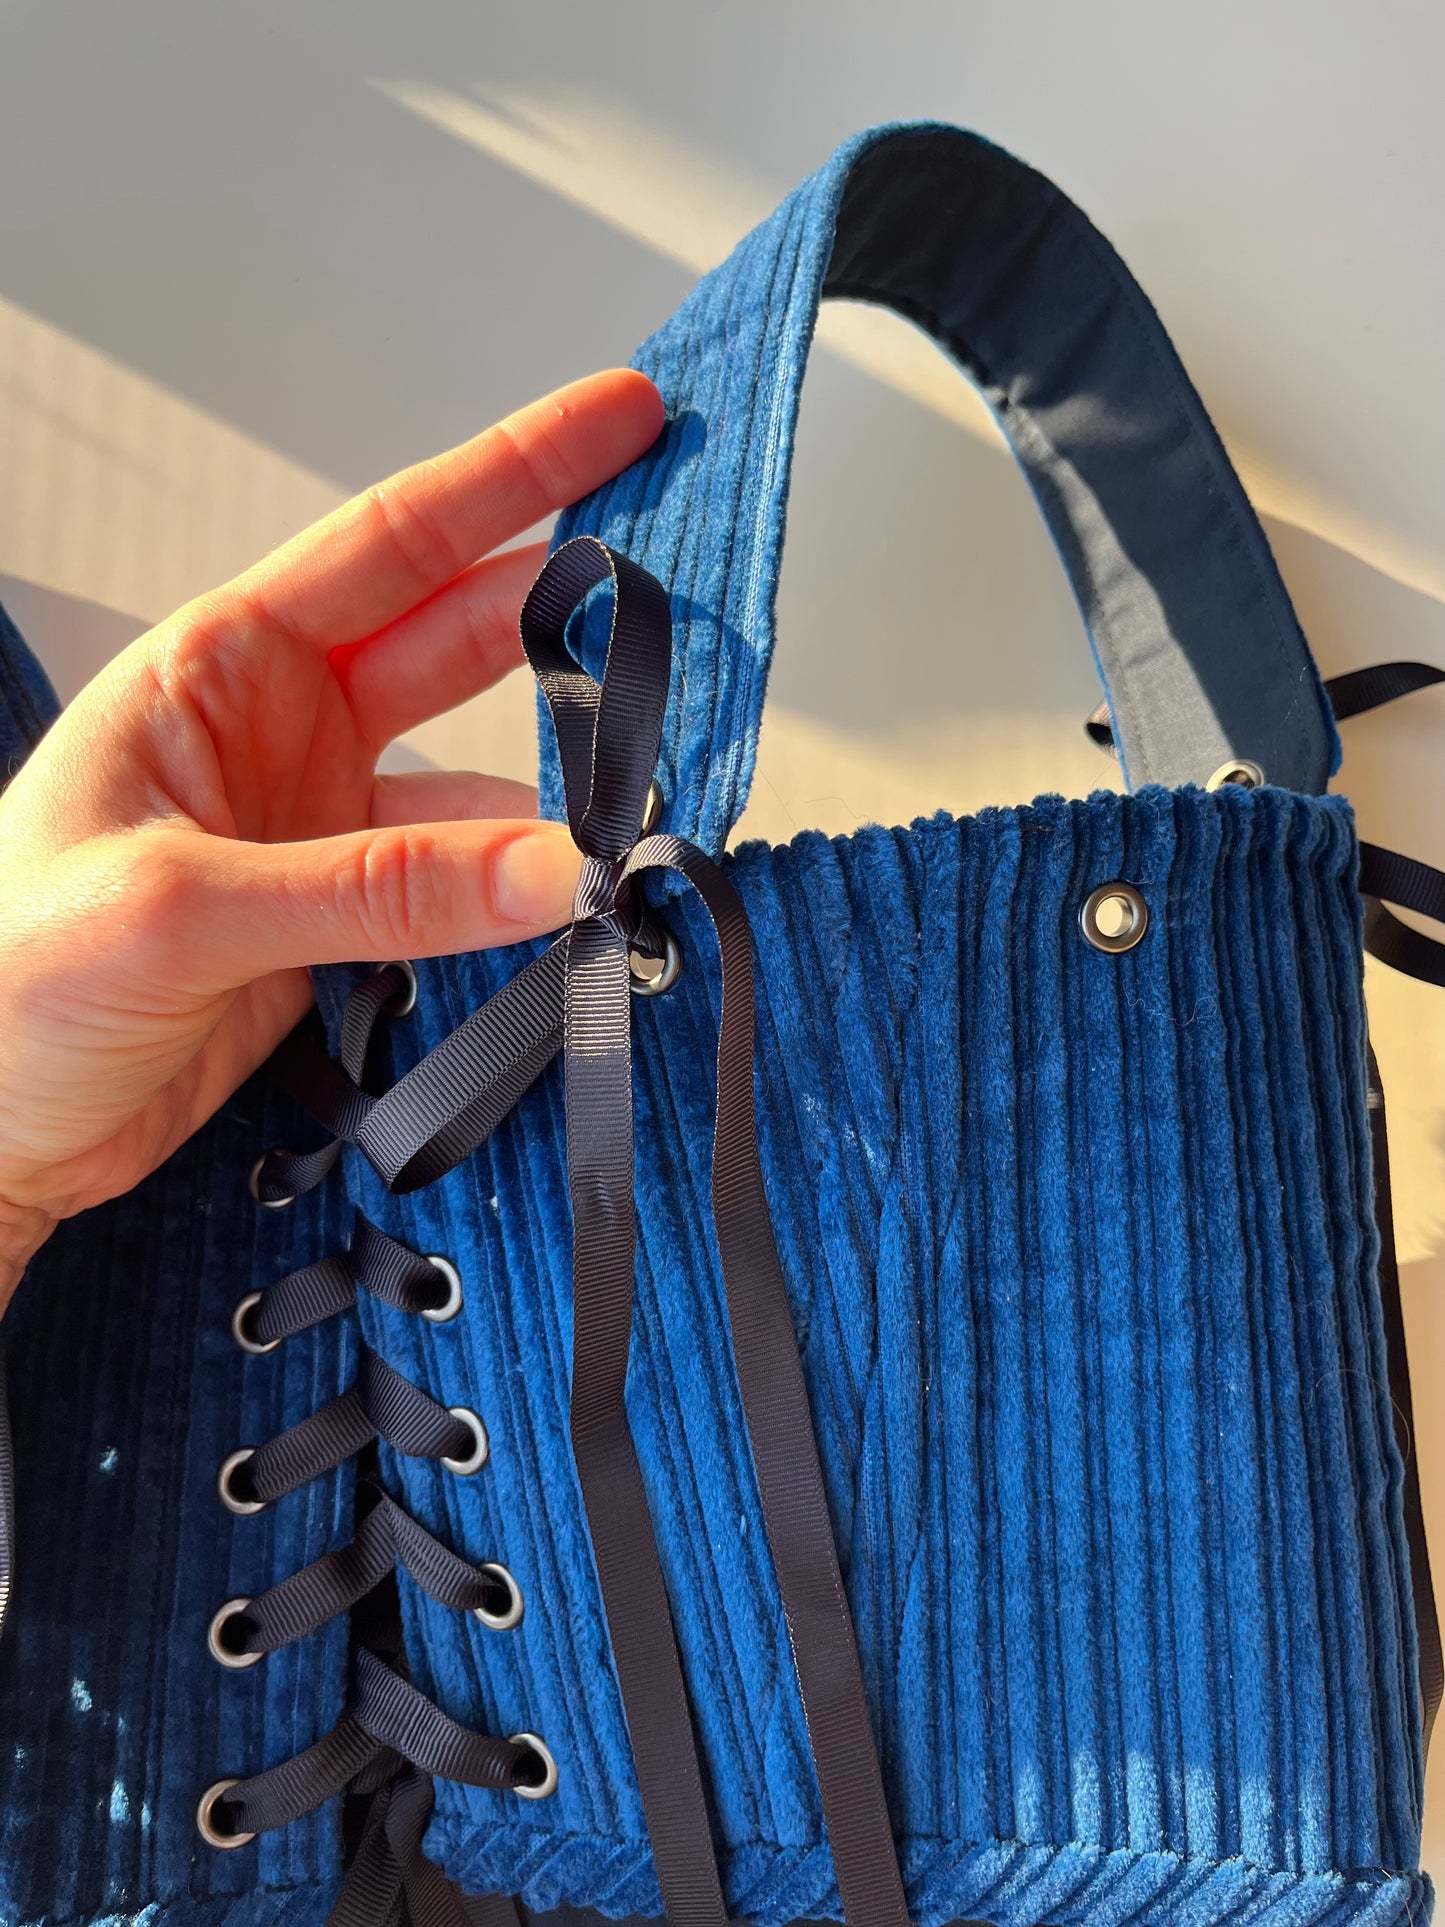 Blue Velvet underbust corsage size M-L